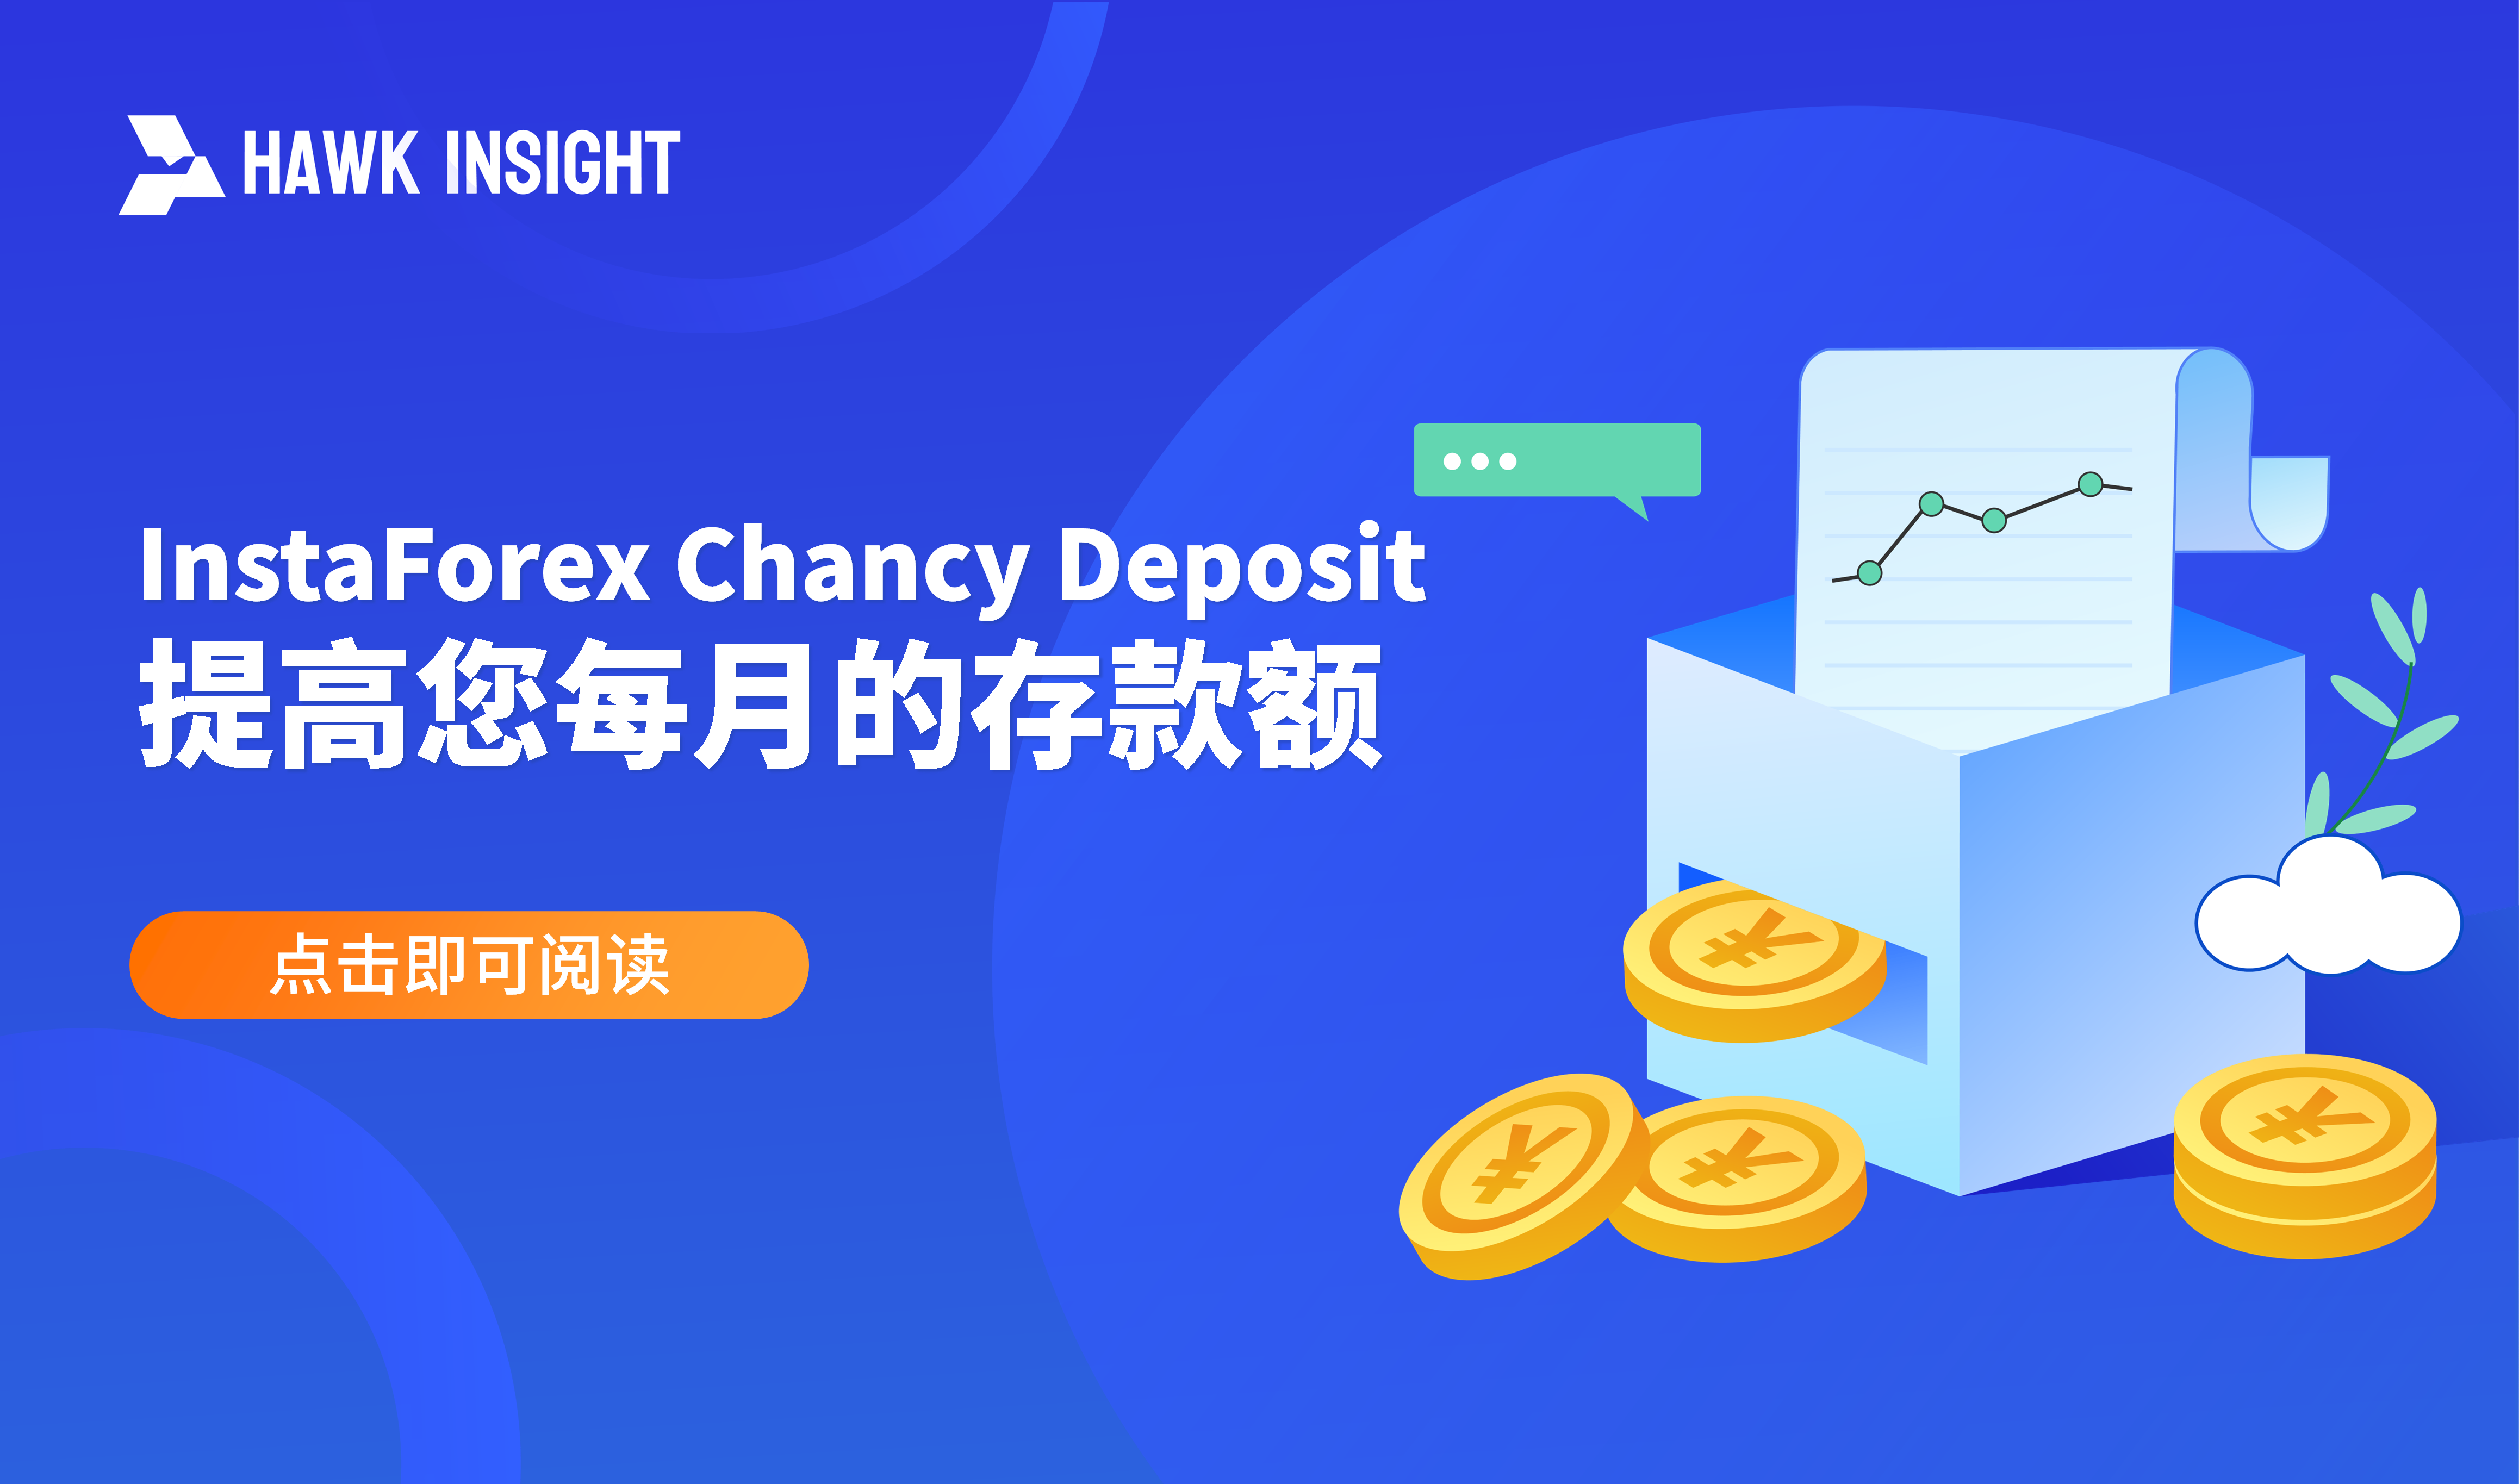 InstaForex Chancy Deposit：提高您每月的存款额